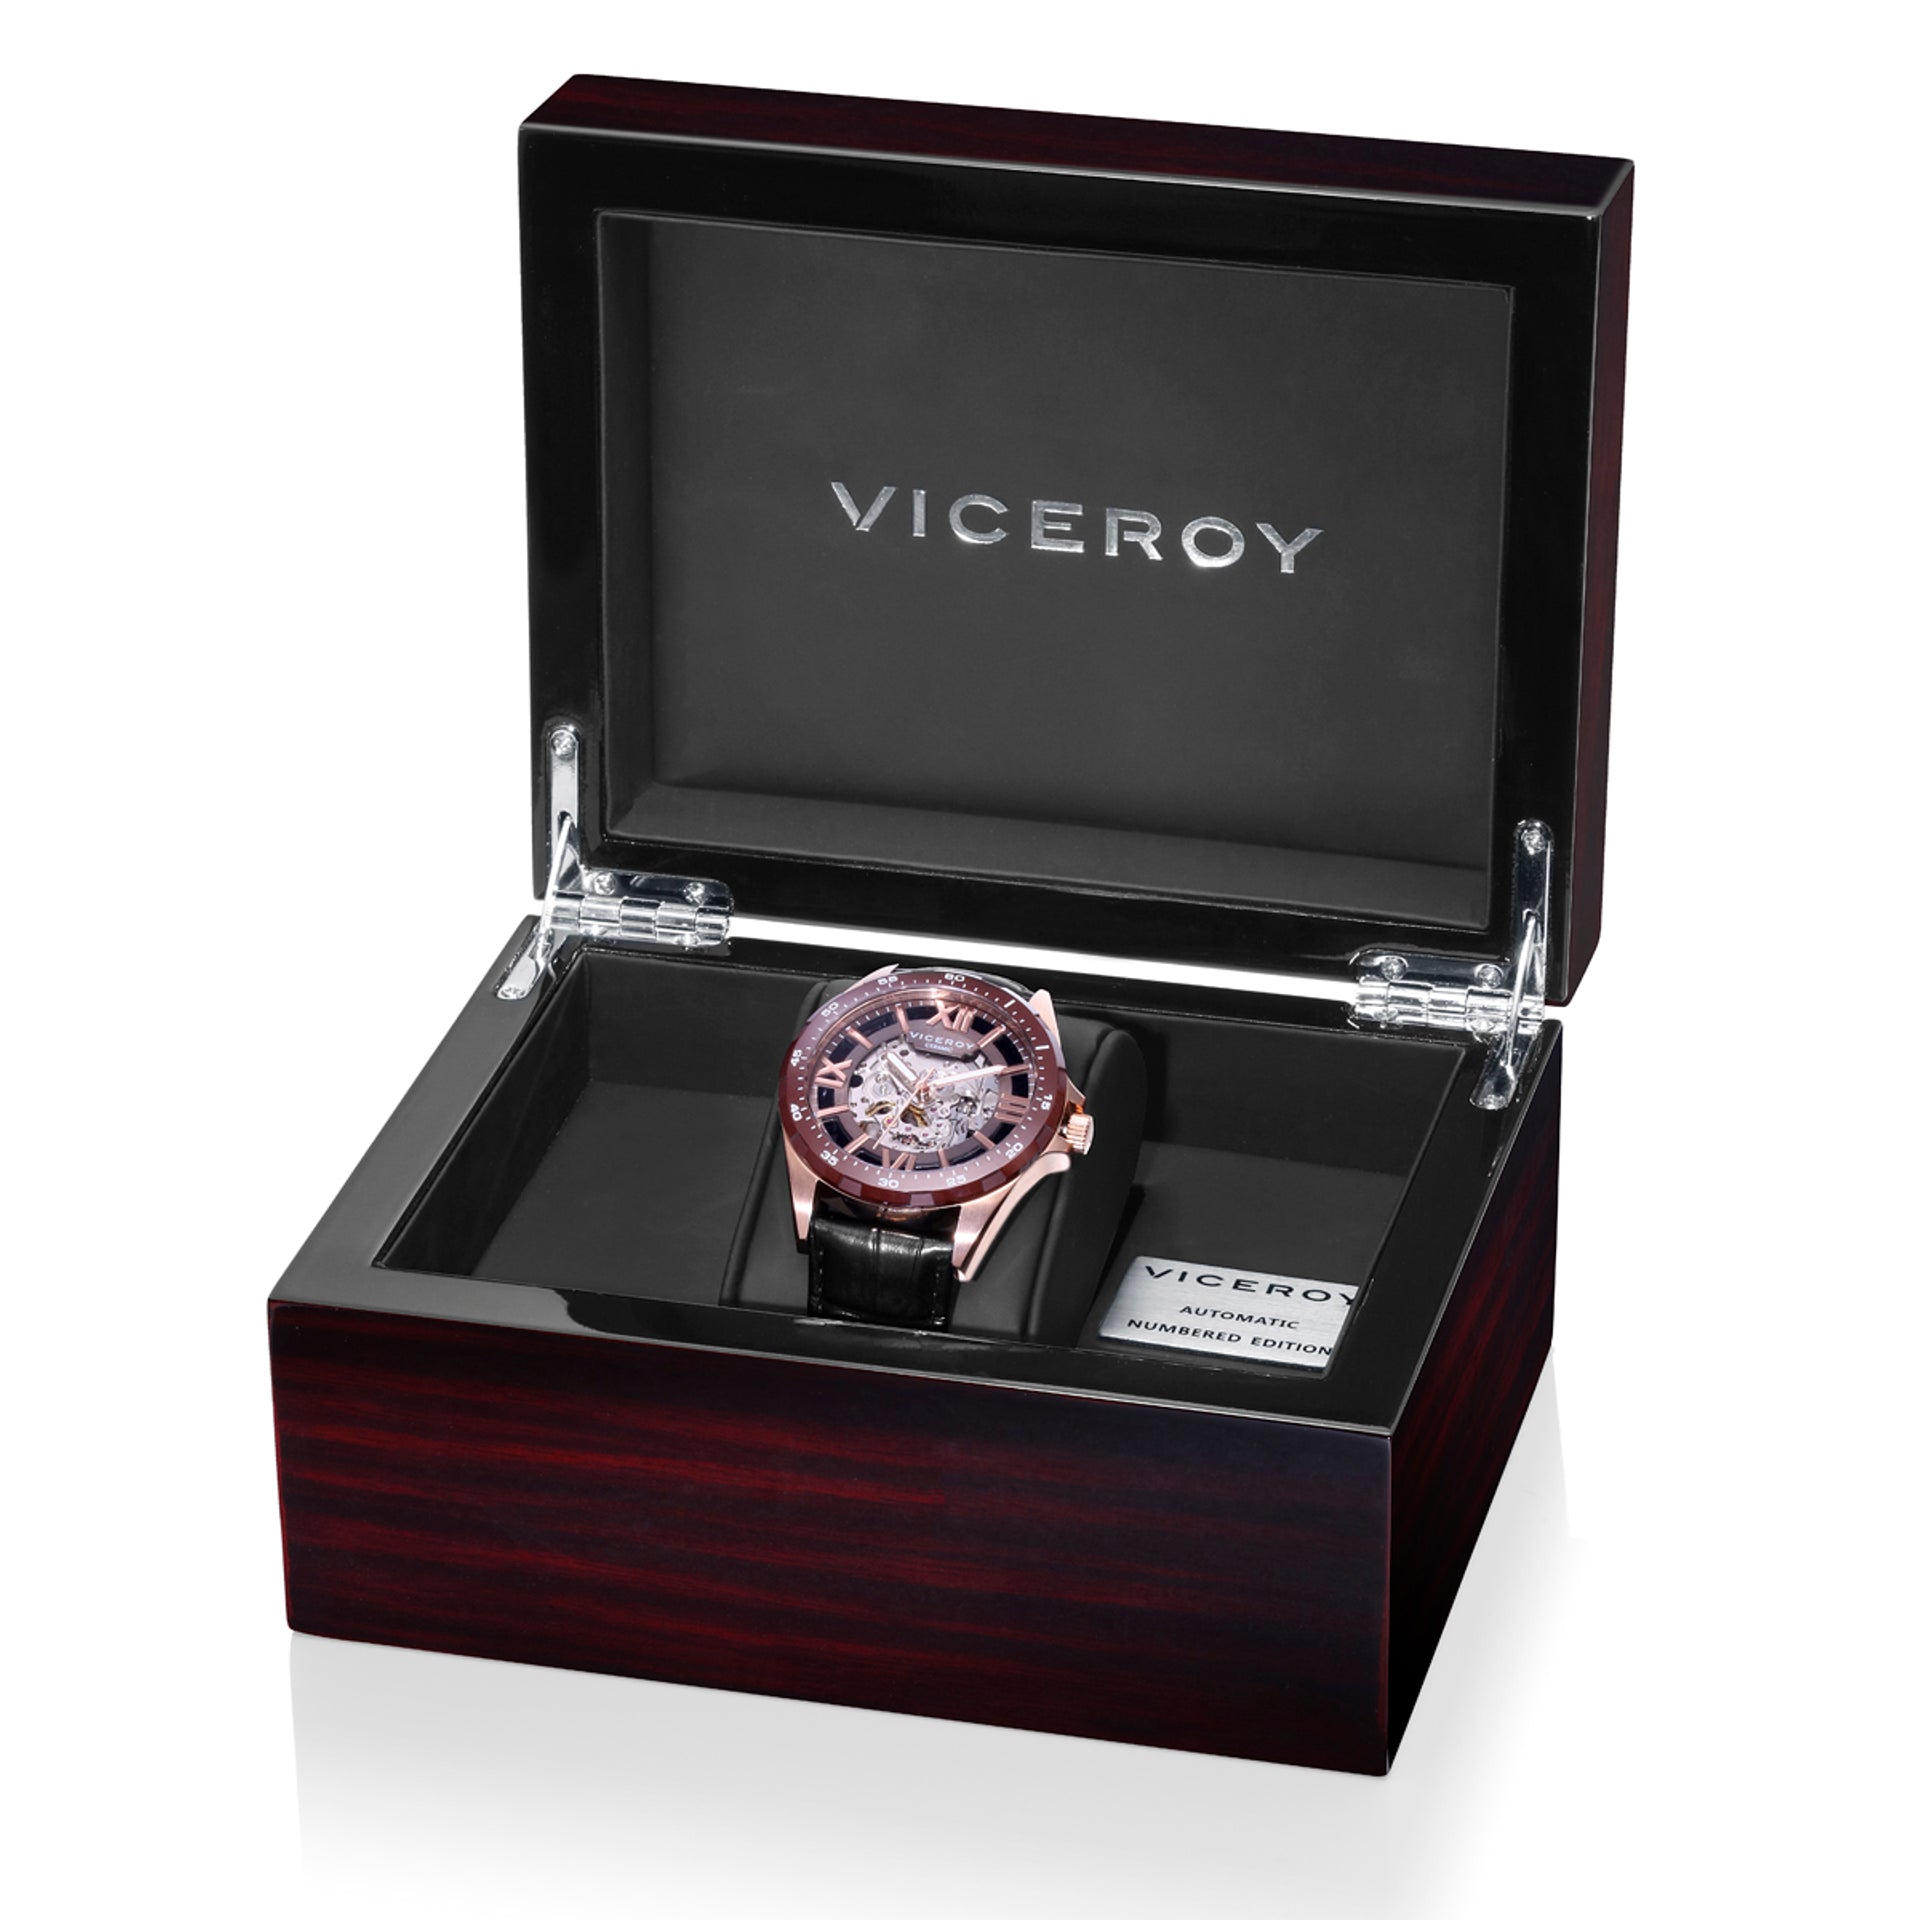 Comprar barato Reloj Viceroy hombre caja acero IP rosa correa caucho  cronómetro Ref. 401279-57. Envíos gratuitos a España y Europa